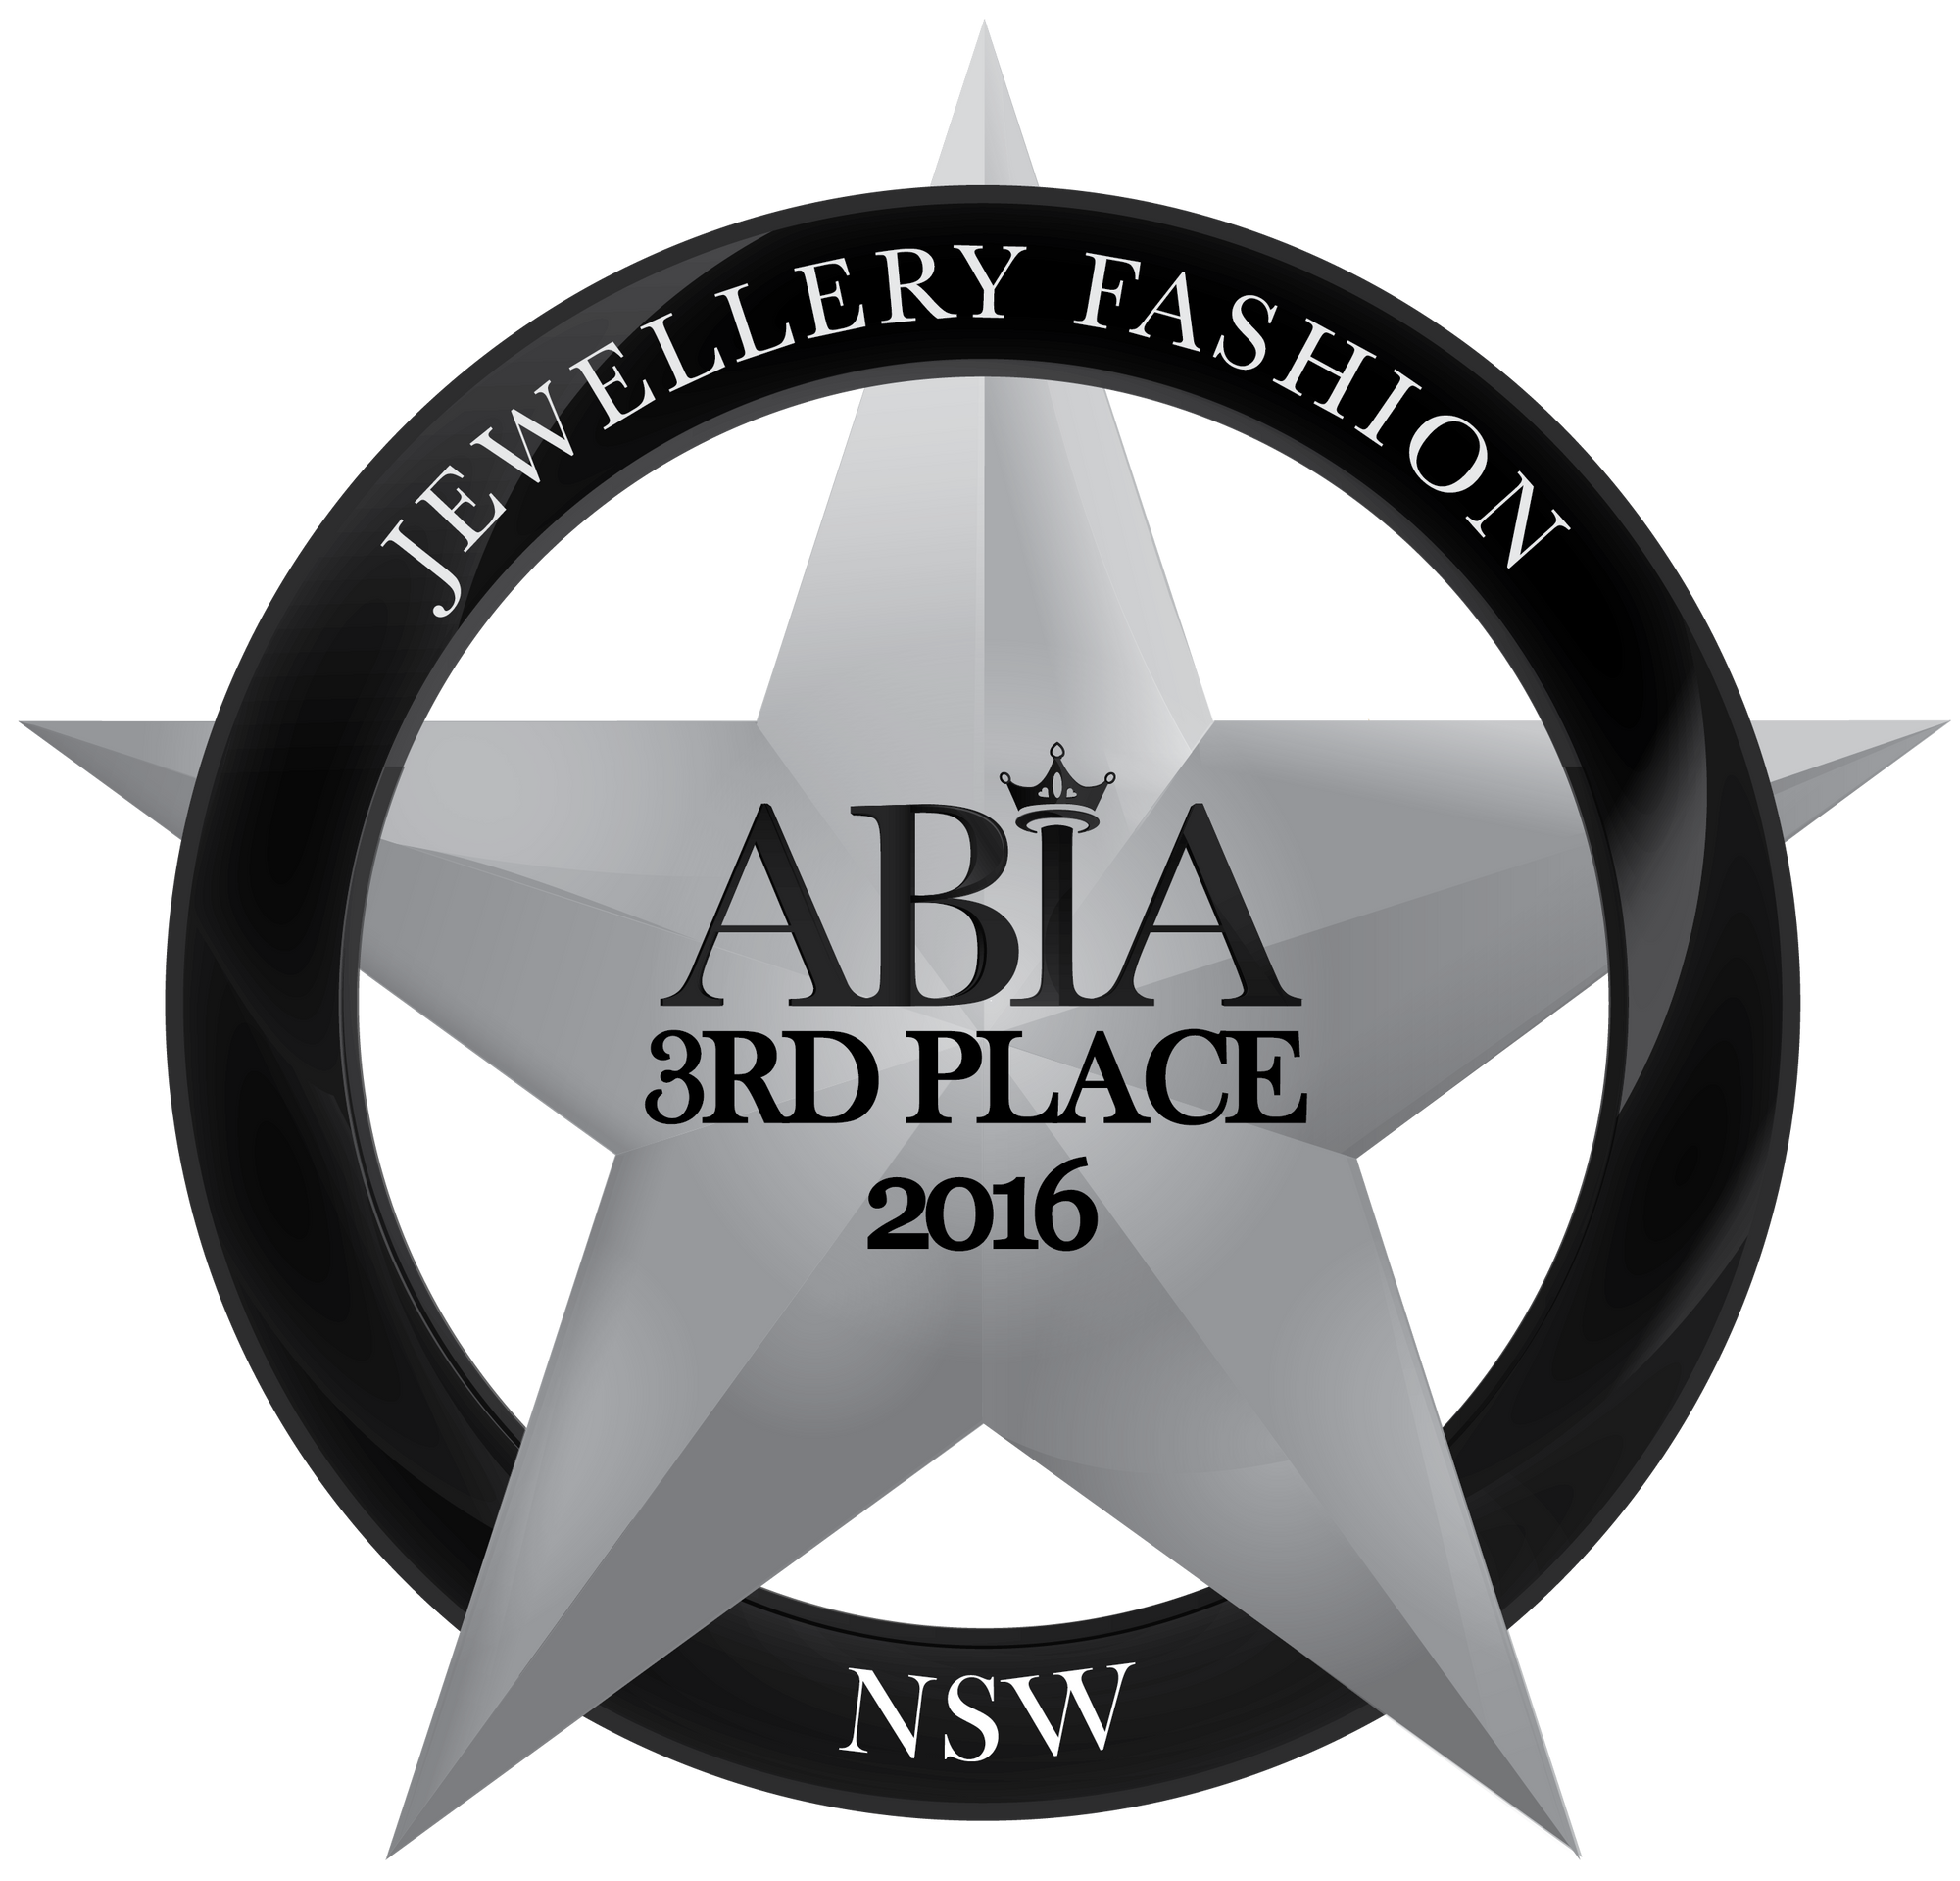 ABIA Awards 2016 Jewellery & Fashion